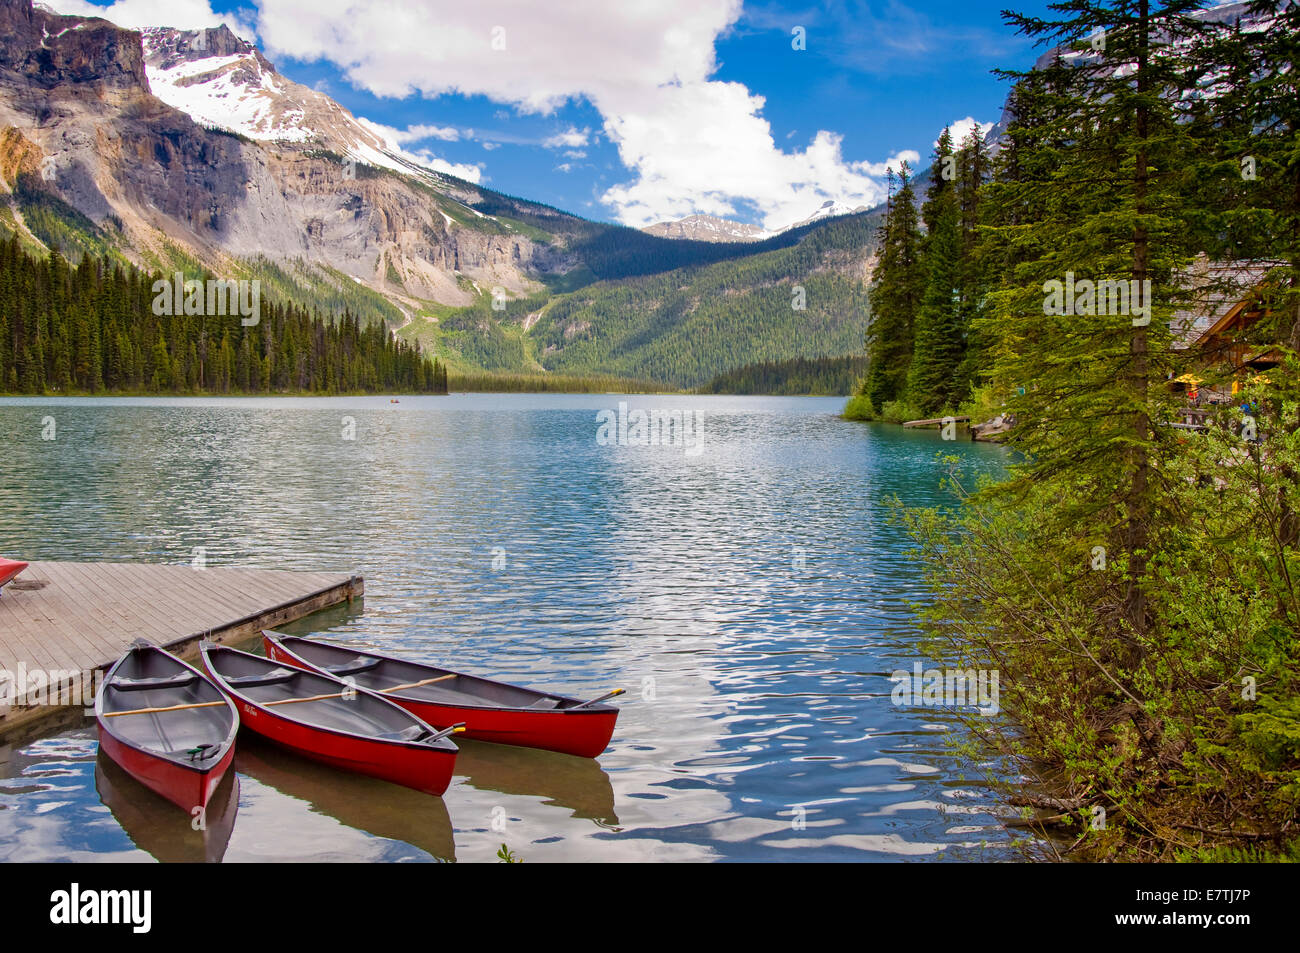 Emerald Lake, le parc national Yoho, Colombie-Britannique, Canada Banque D'Images